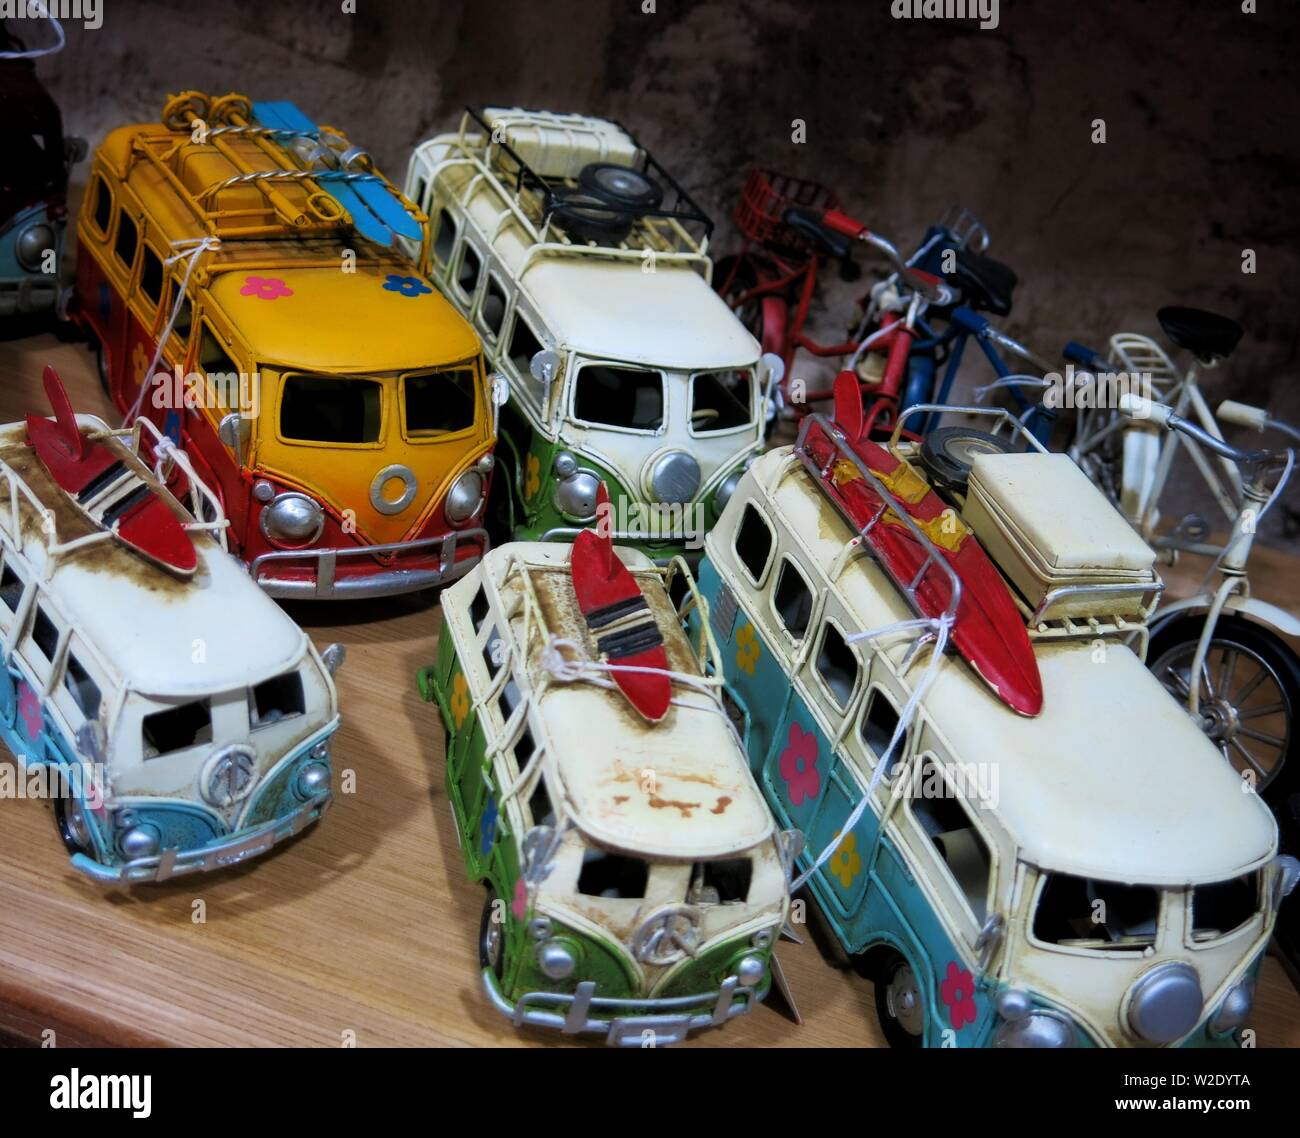 Modelle von Wohnwagen und Fahrräder wie in einem Schaufenster gesehen. Redaktionelle Material (Idee von Tourismus, Camping). Stockfoto